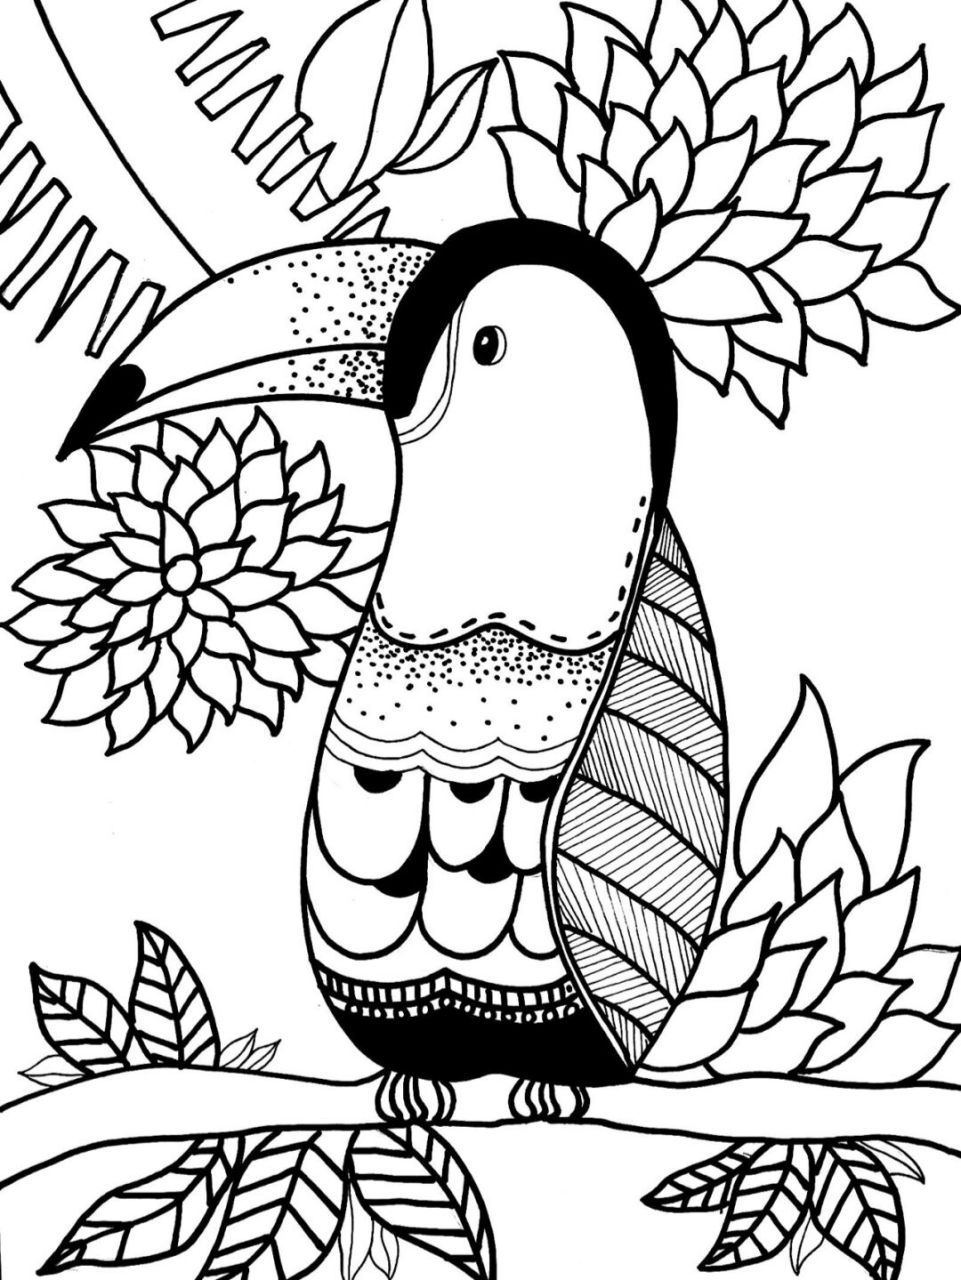 鹦鹉黑白线描画图片